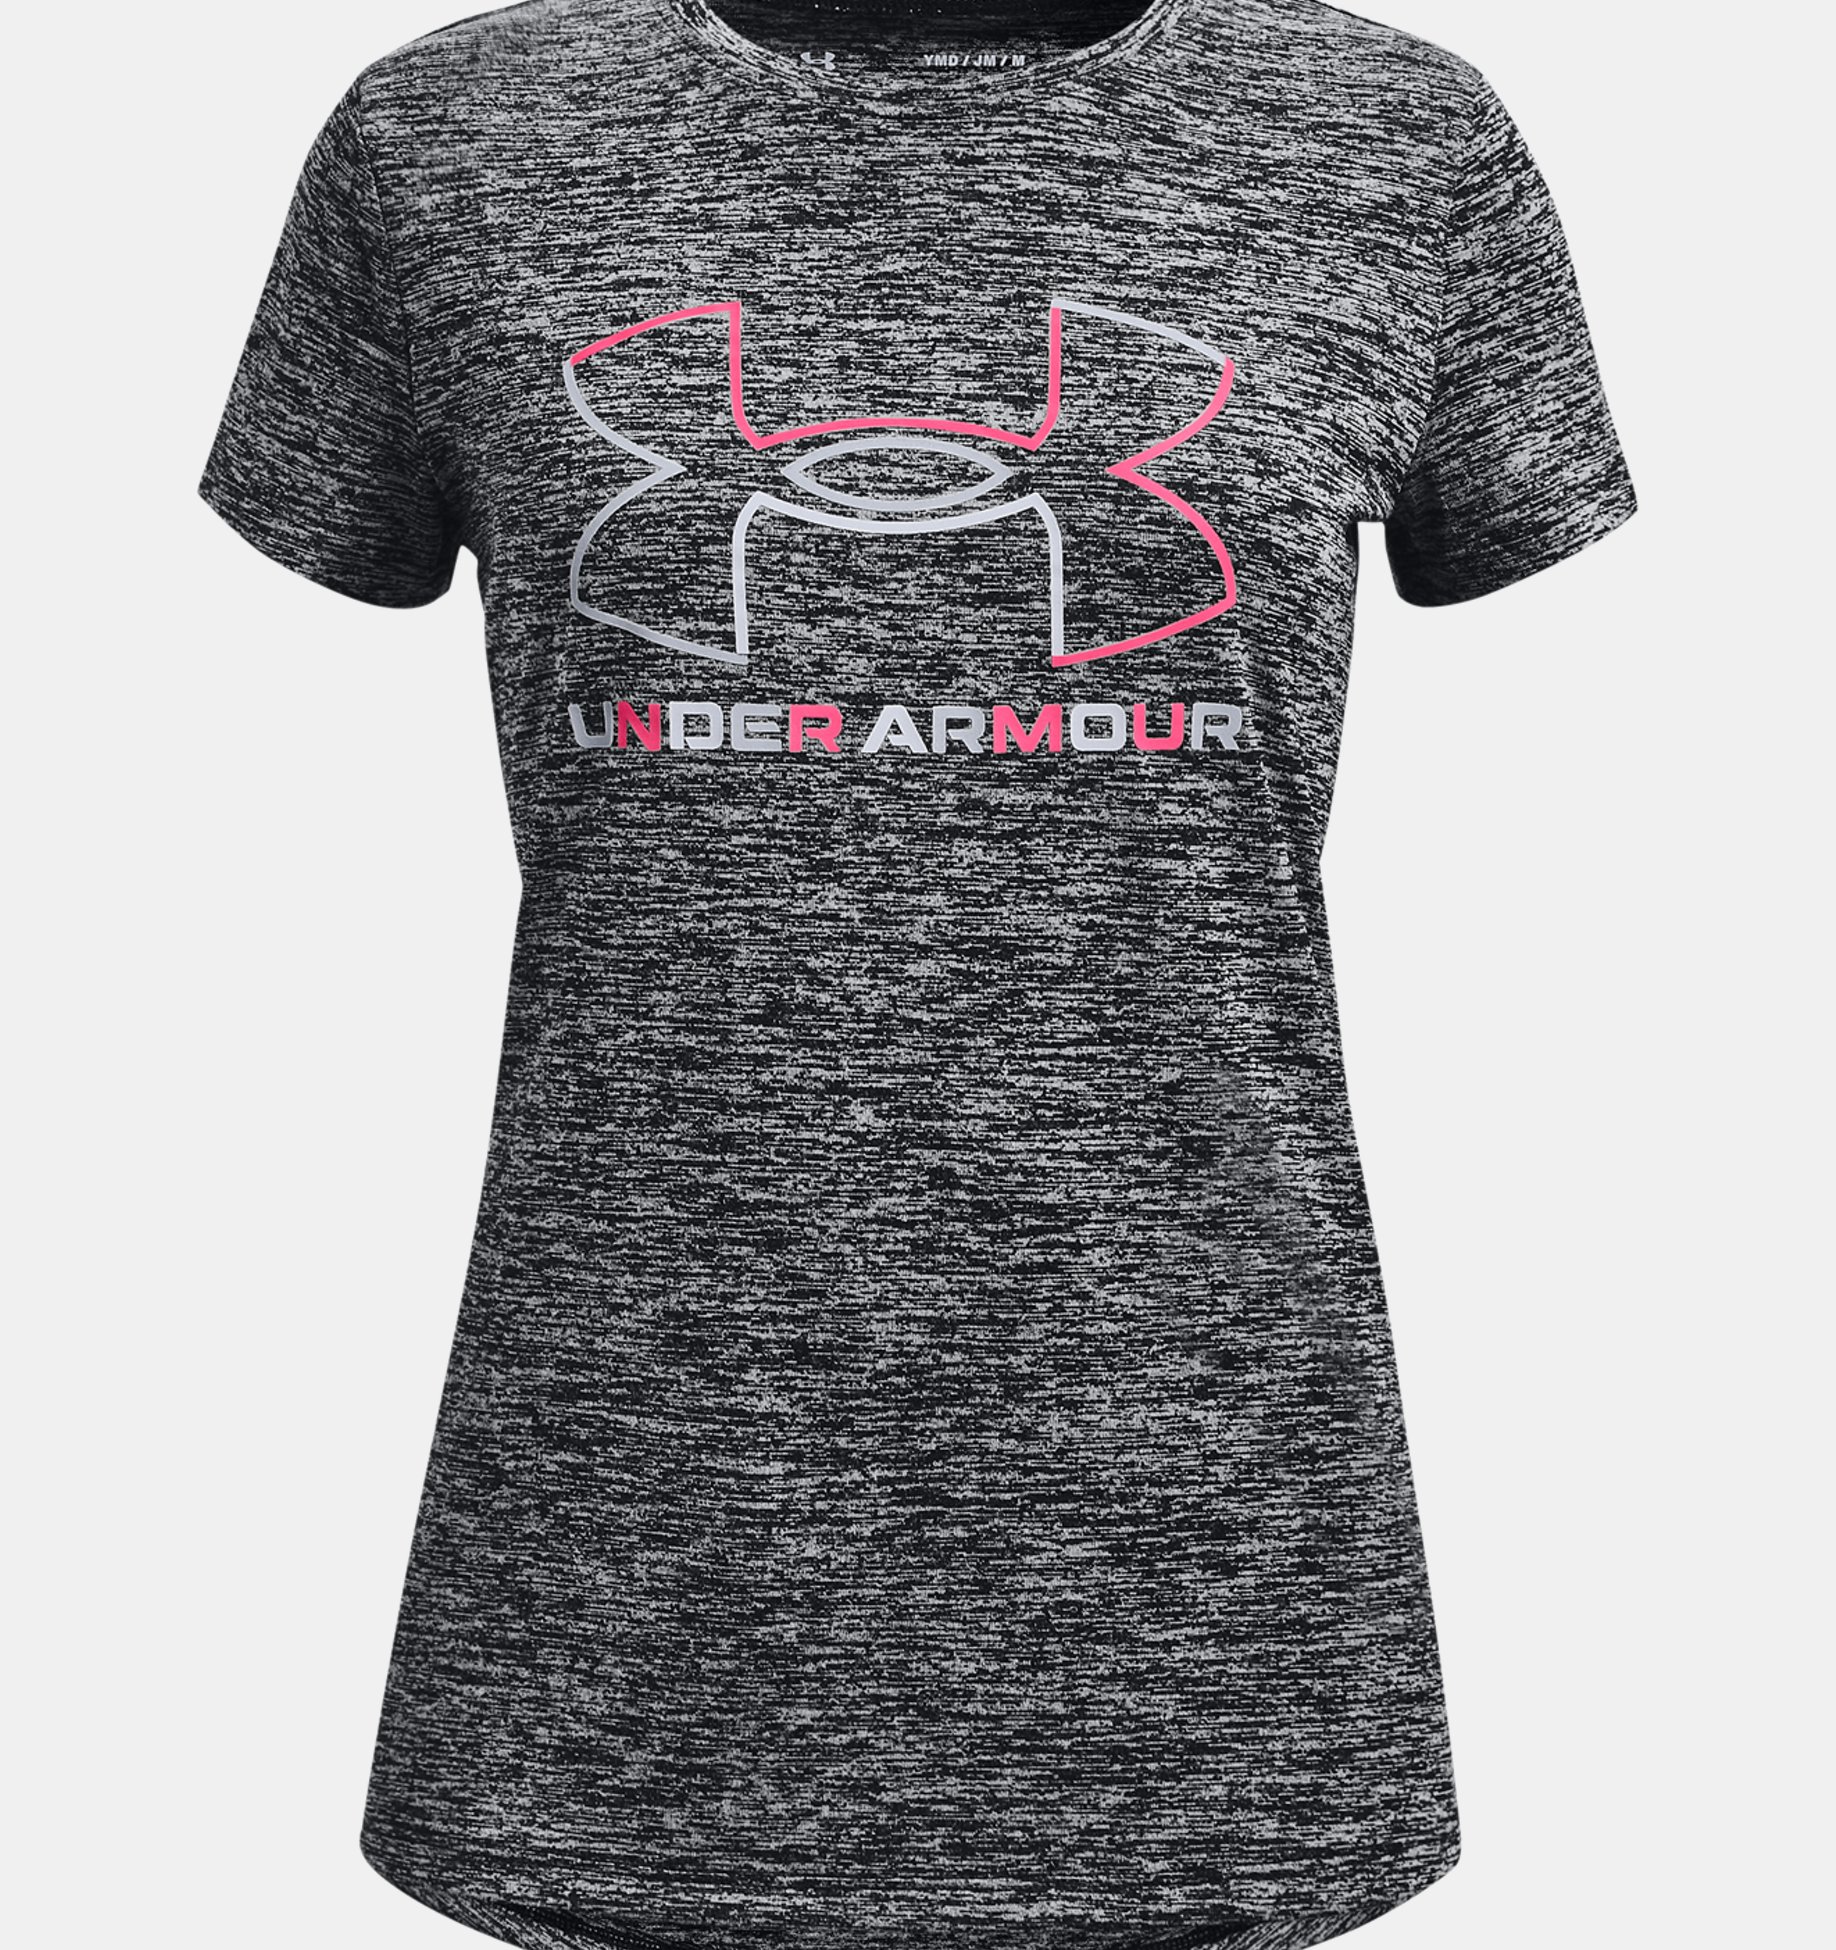 Under Armour Girls Big Logo Tech Short Sleeve Training Workout T-Shirt